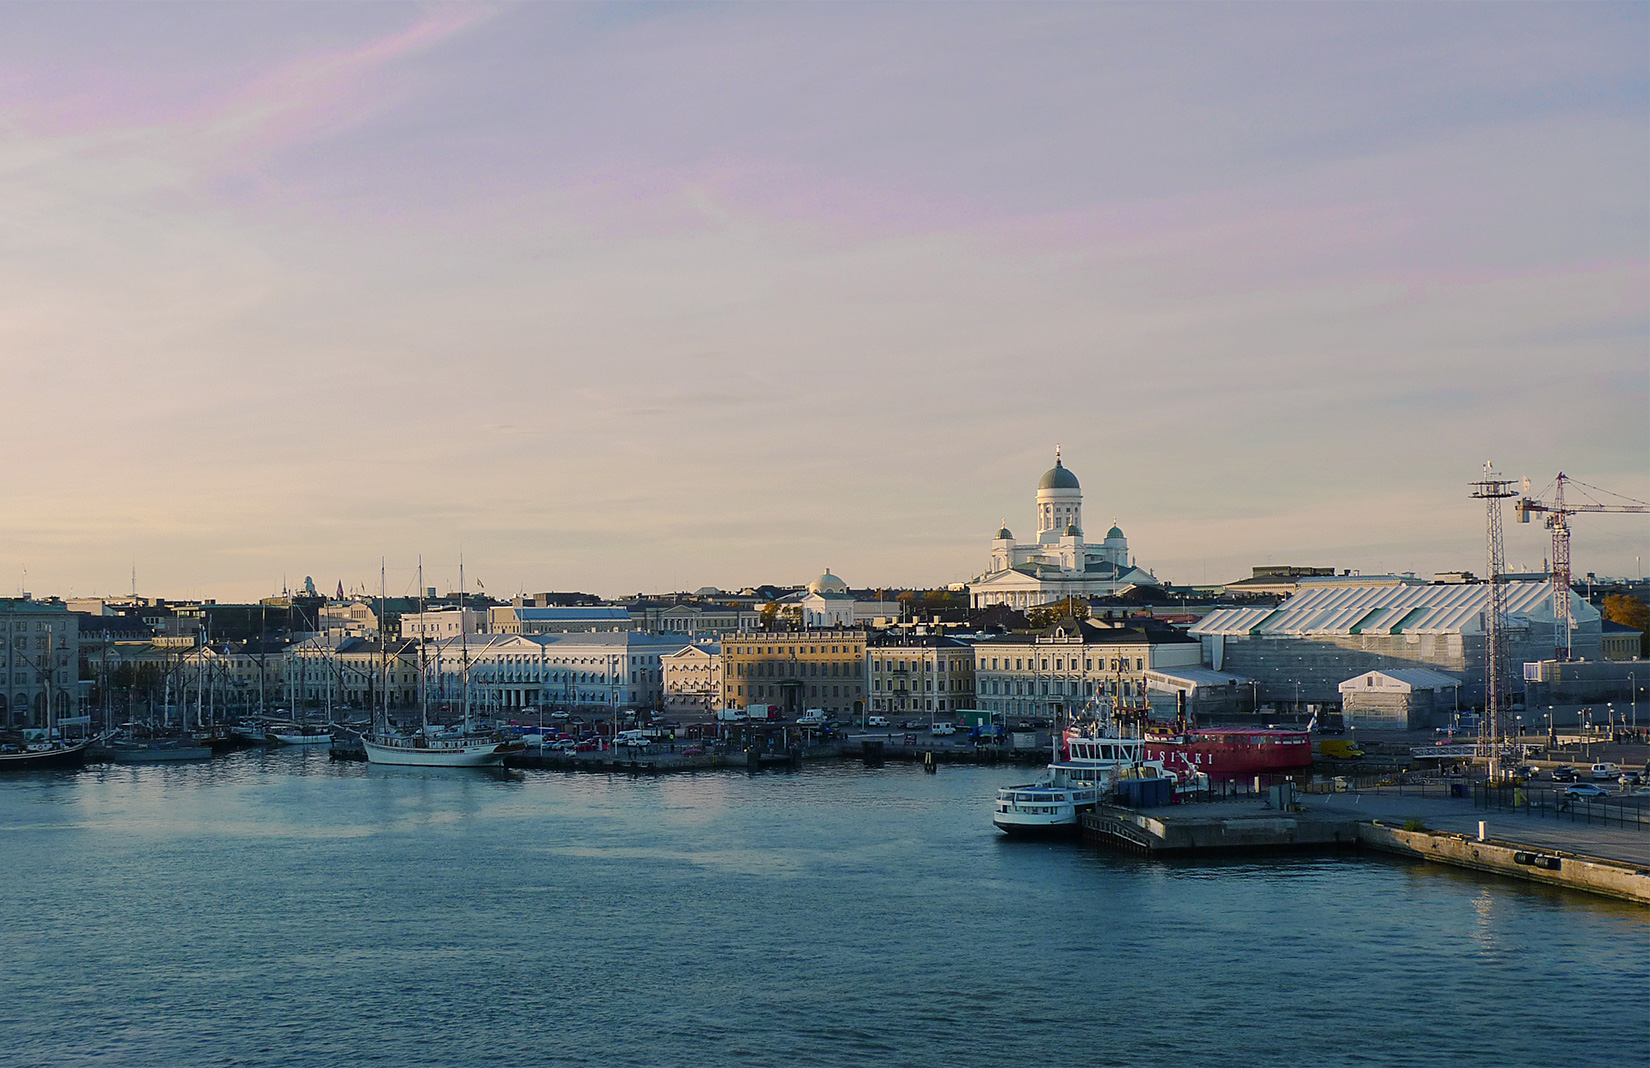 Helsinki Marina and Port at dusk